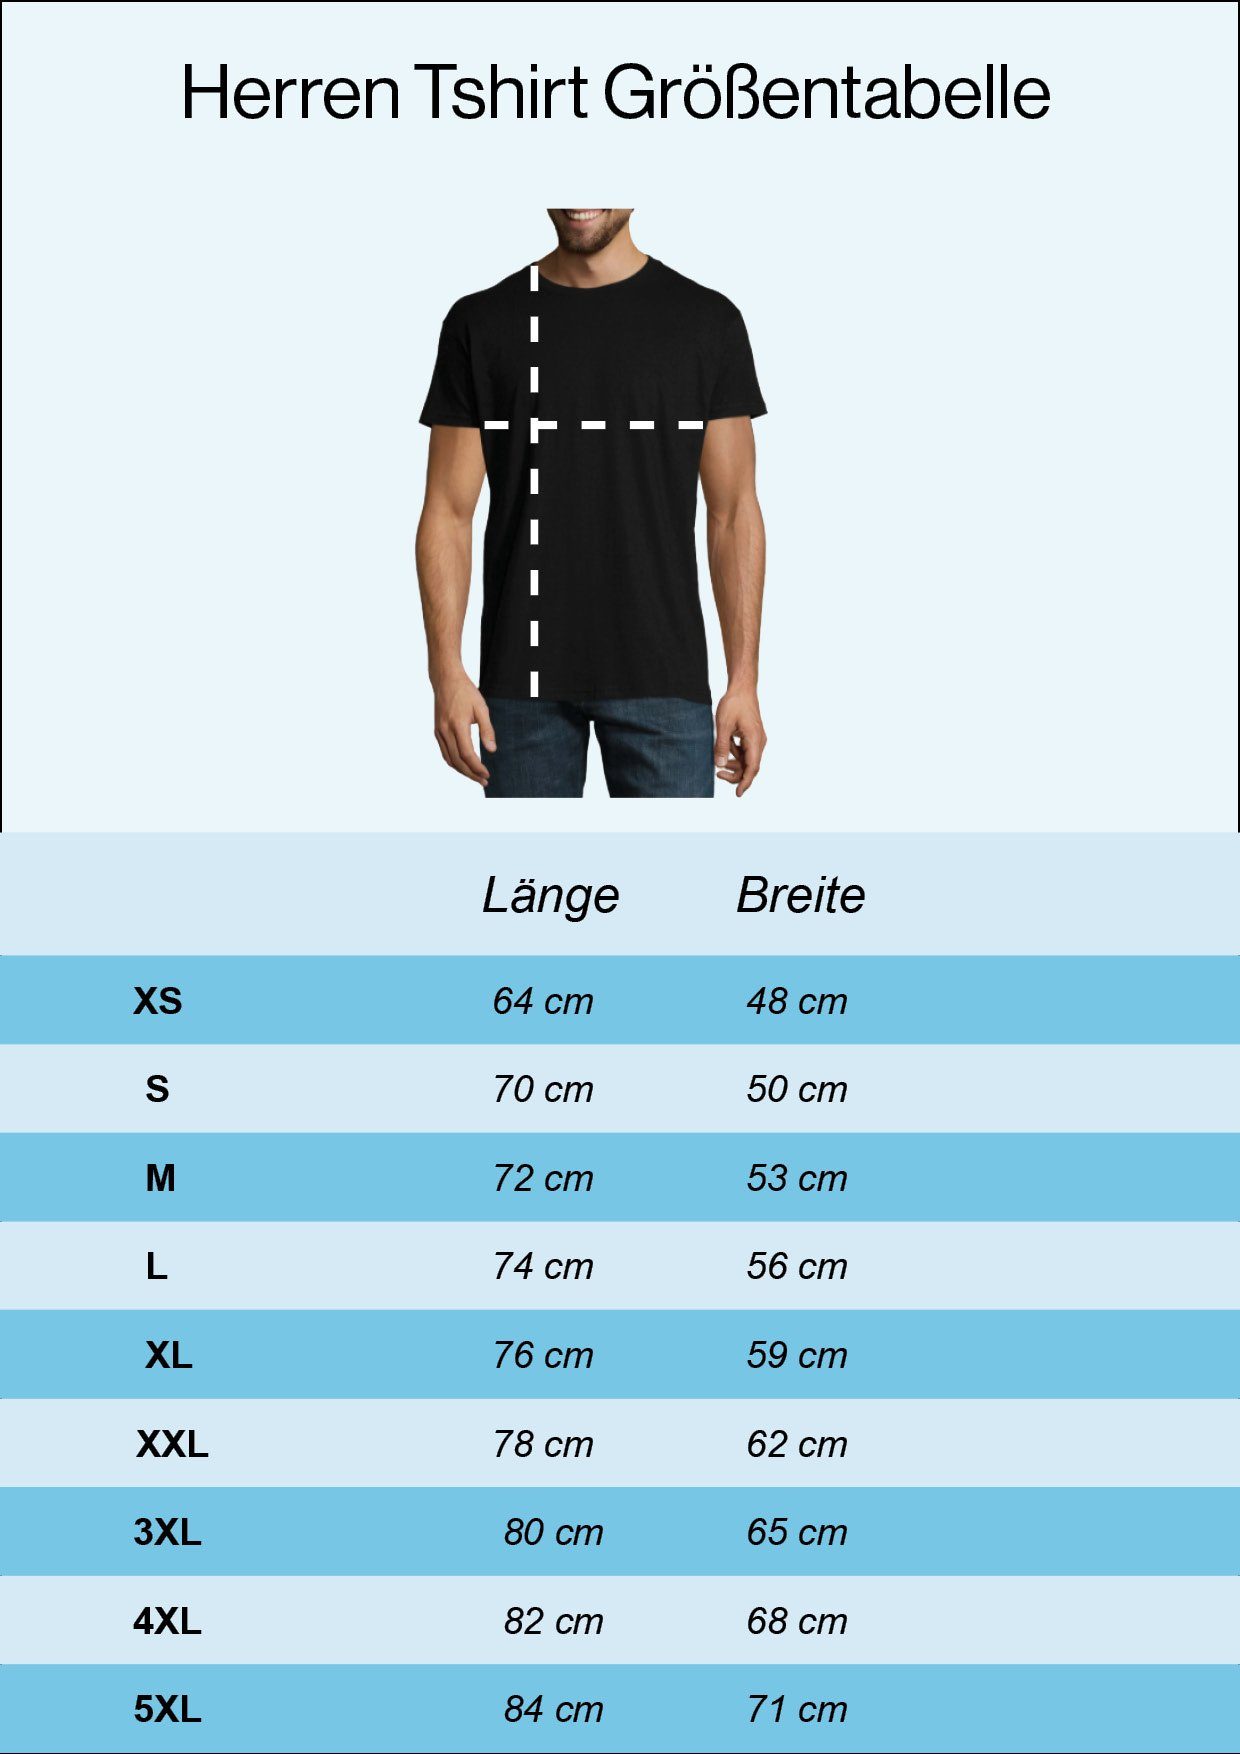 Youth Rente Navy mit lustigem Designz Ruhestand Geschenk T-Shirt zum 2024 Spruch T-Shirt RENTNER Herren